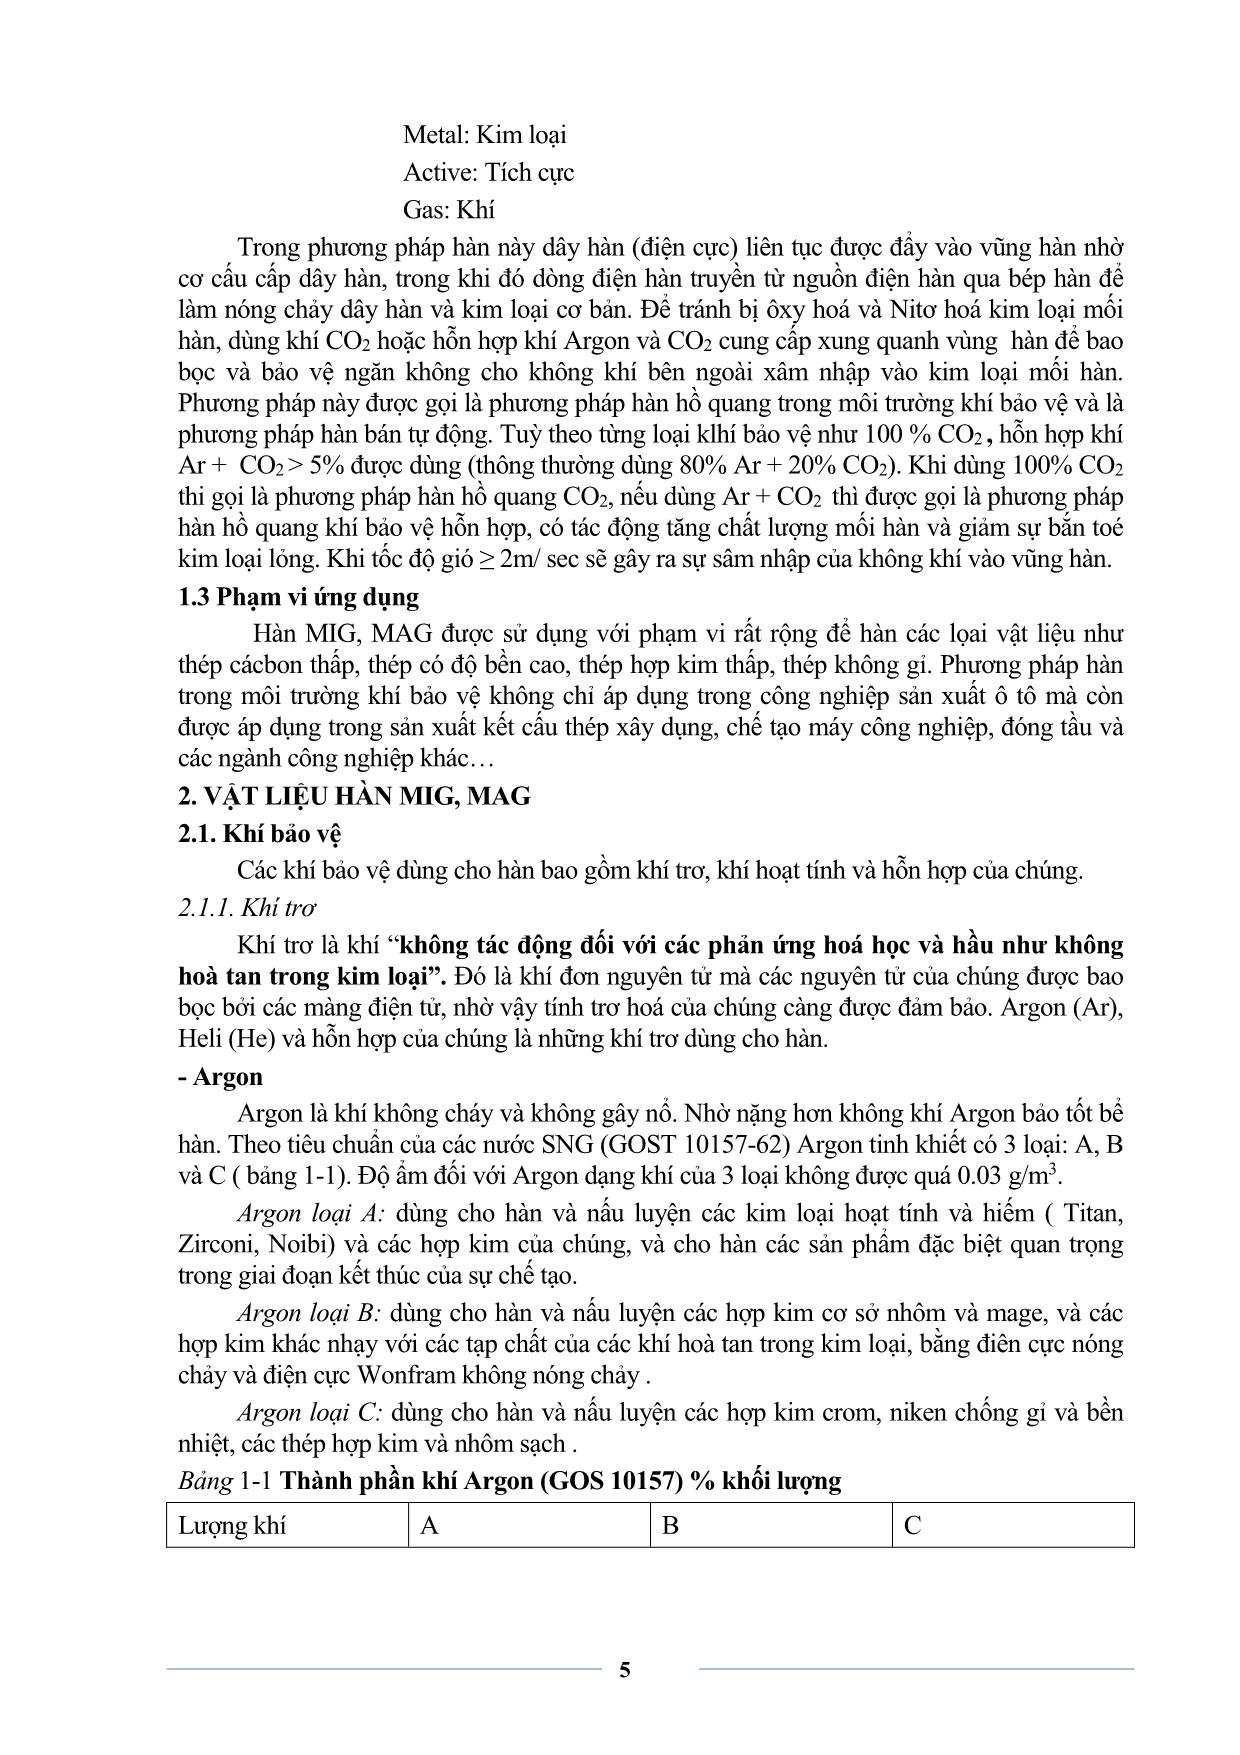 Giáo trình sơ cấp Hàn MIG-MAG trang 7